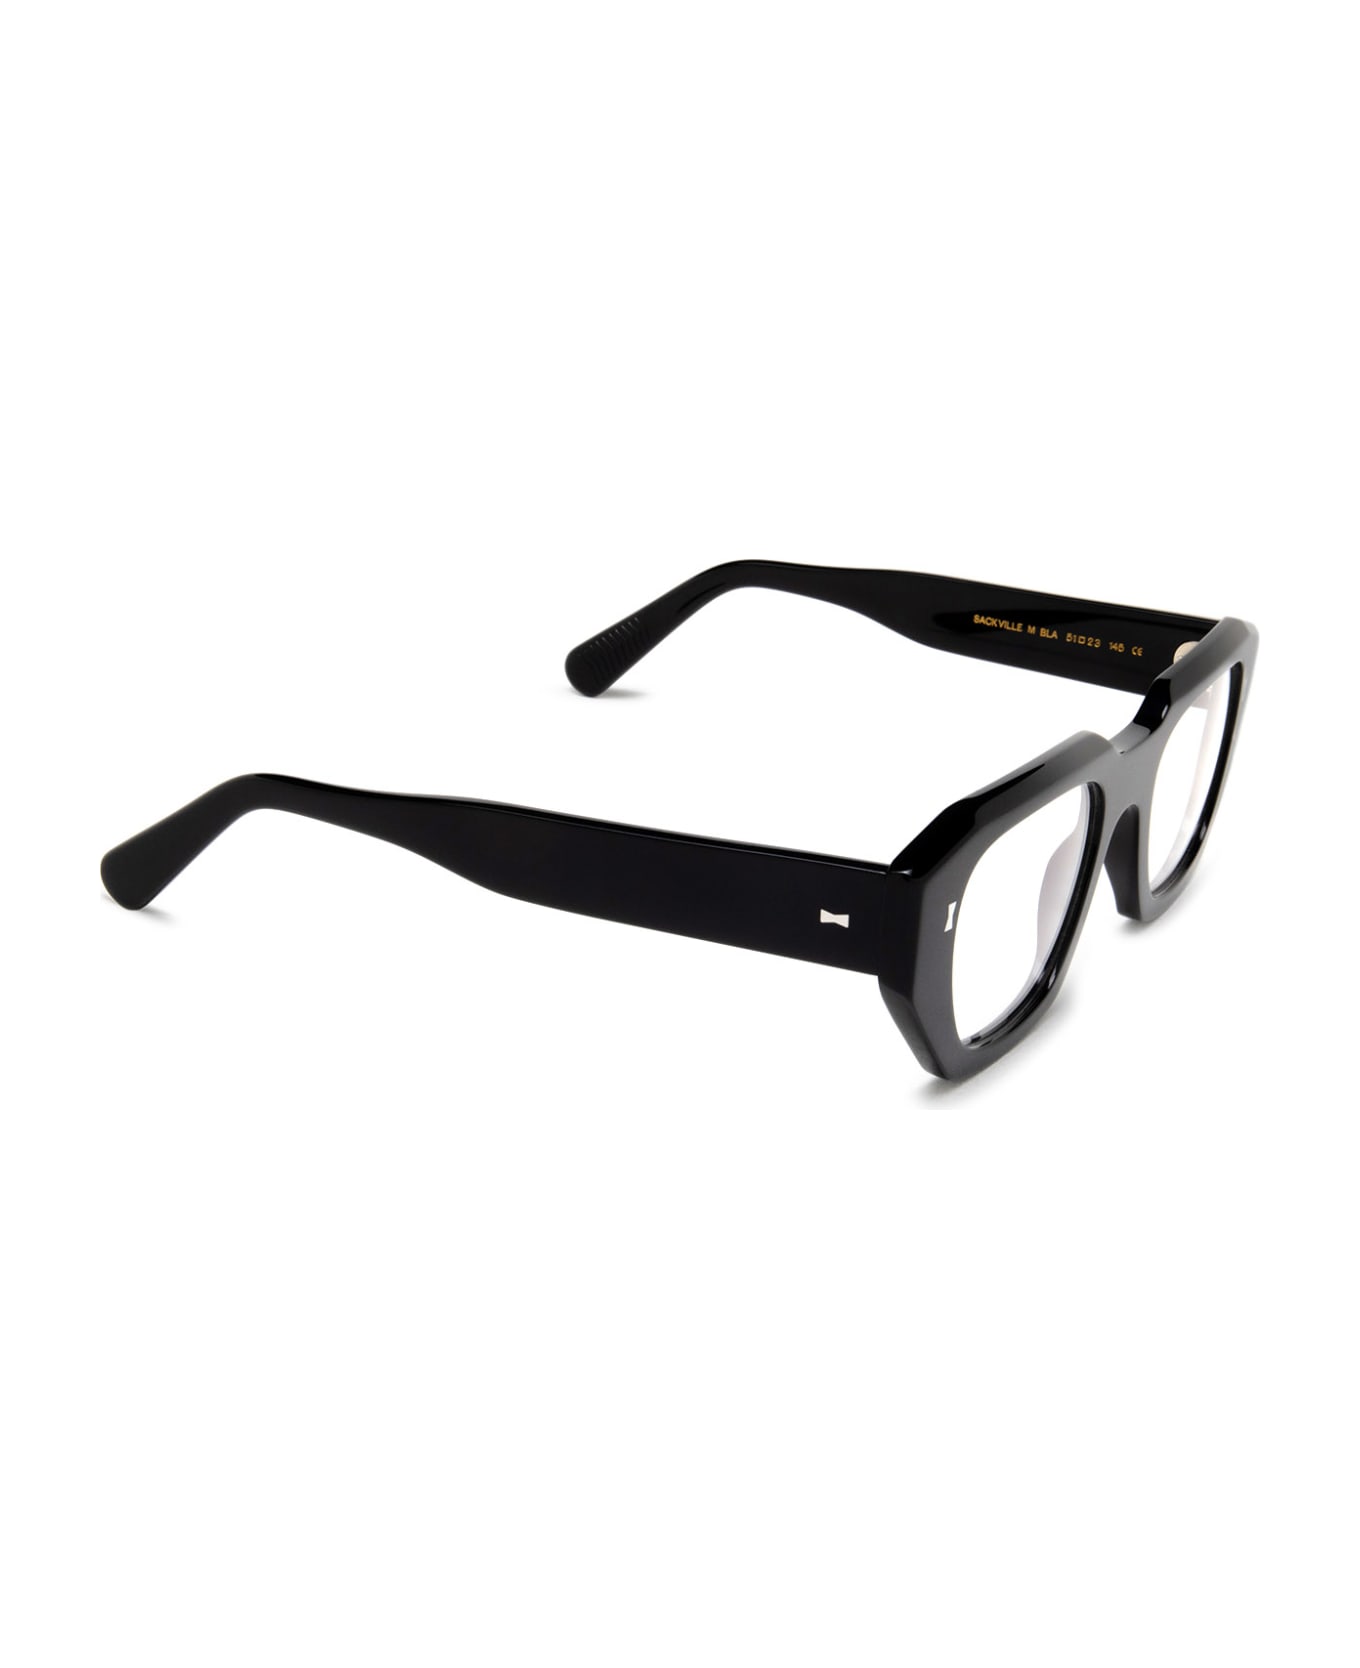 Cubitts Sackville Black Glasses - Black